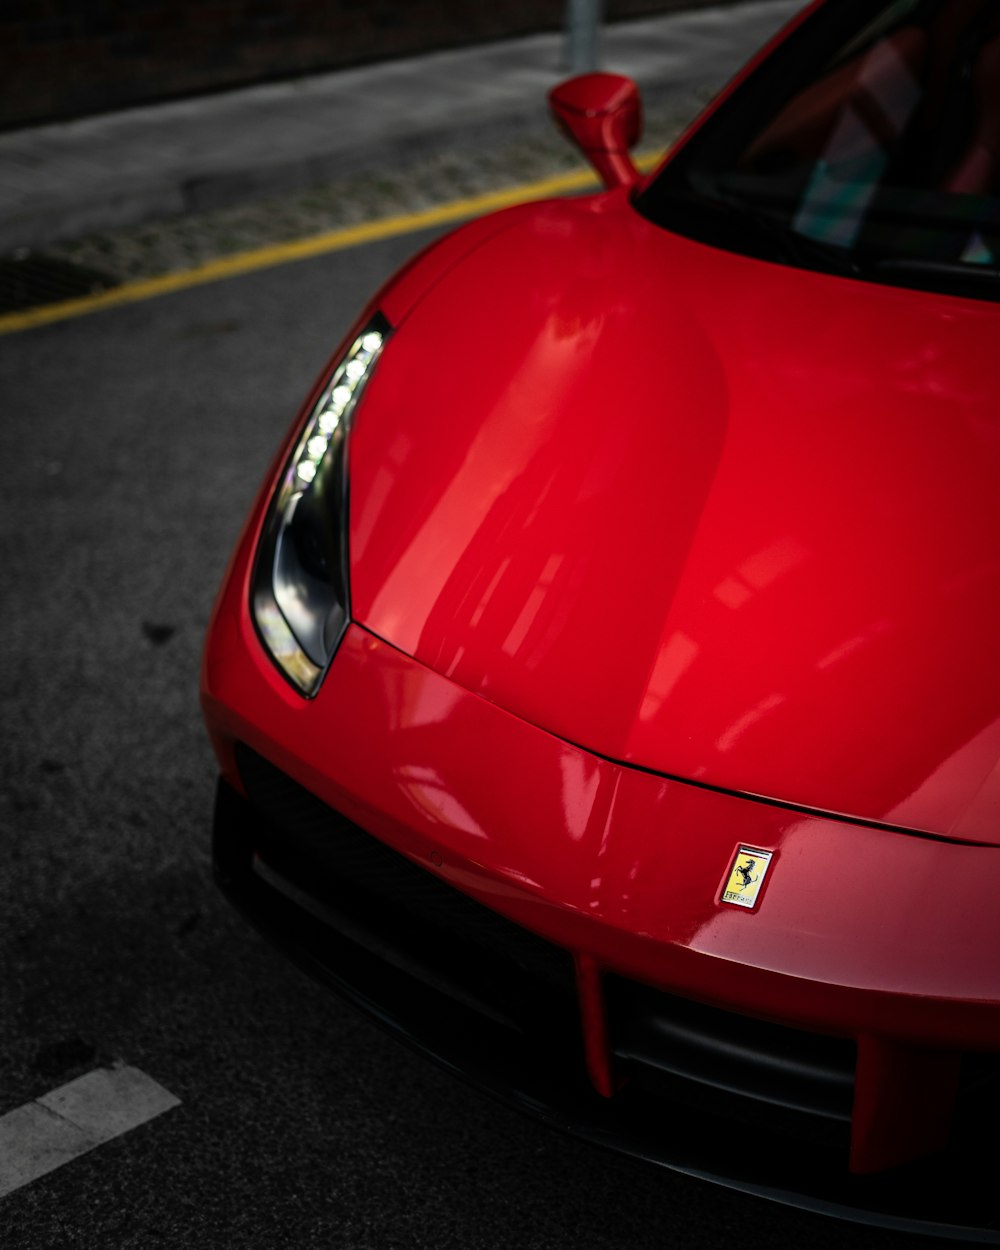 Coche Ferrari rojo en la carretera durante el día